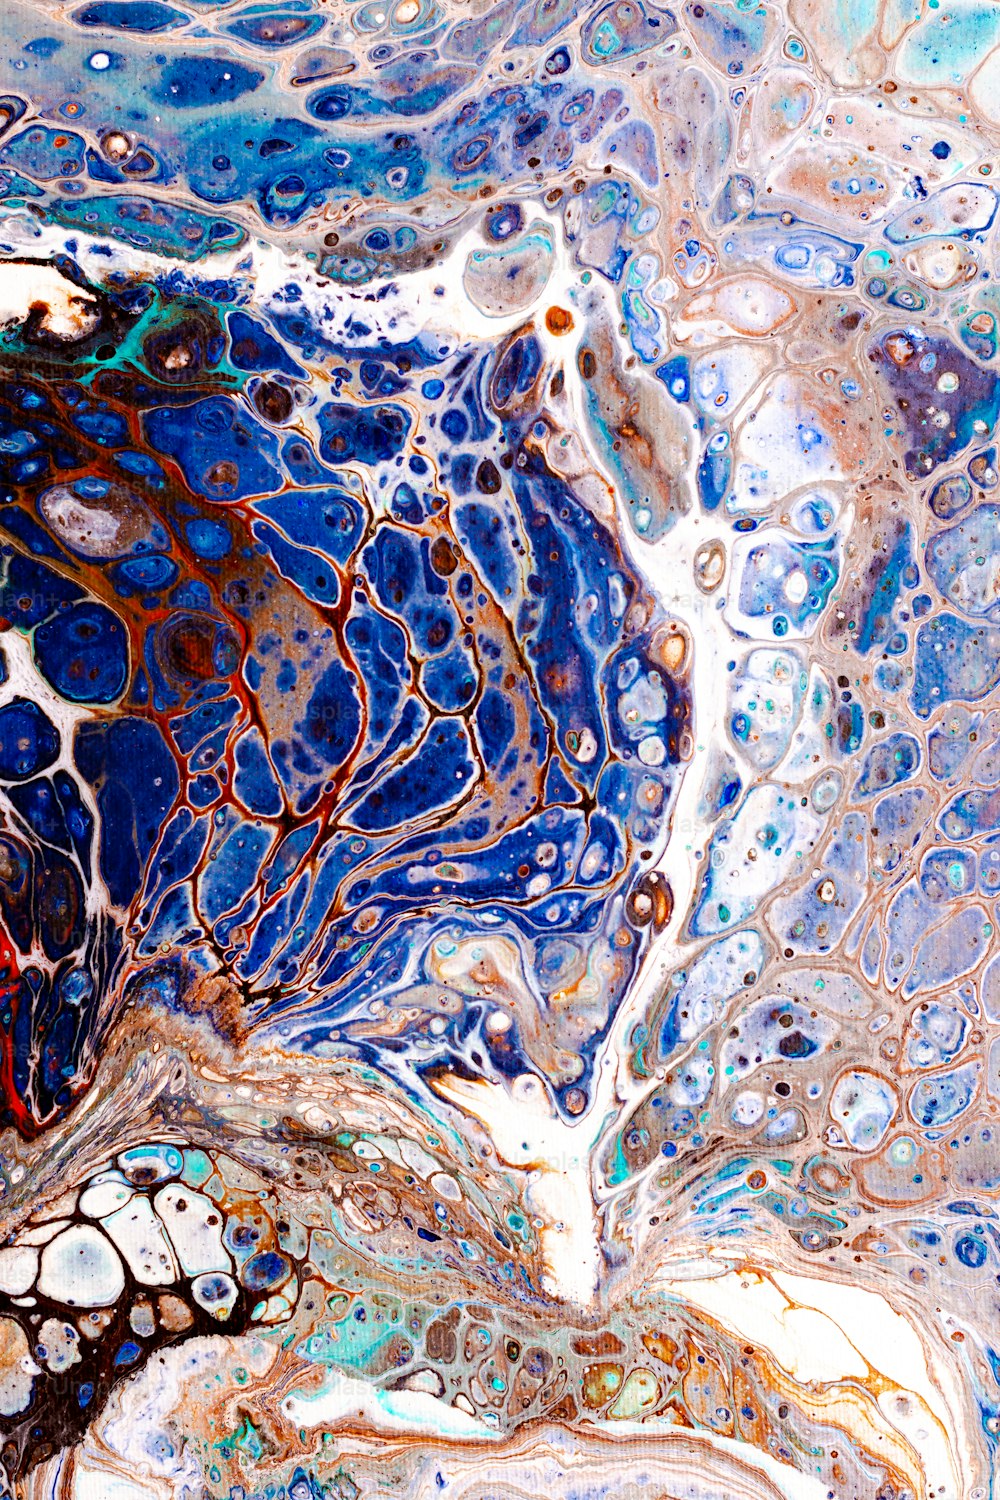 Una pintura abstracta de colores azul, marrón y blanco